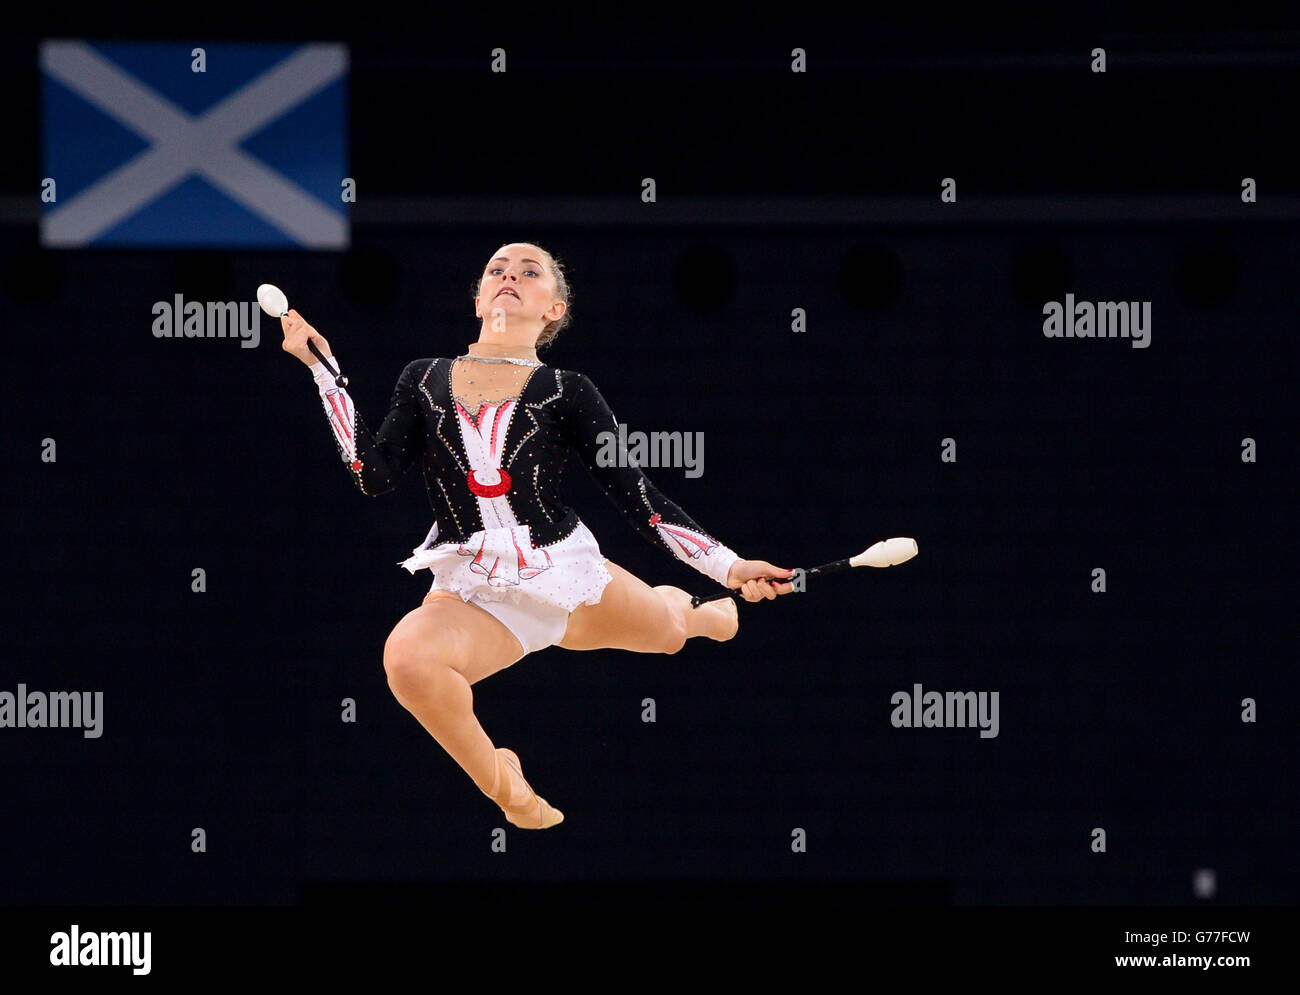 Lauren Brash, en Écosse, participe à la finale de l'équipe de gymnastique rythmique et à la qualification individuelle à SSE Hydro lors des Jeux du Commonwealth de 2014 à Glasgow. Banque D'Images